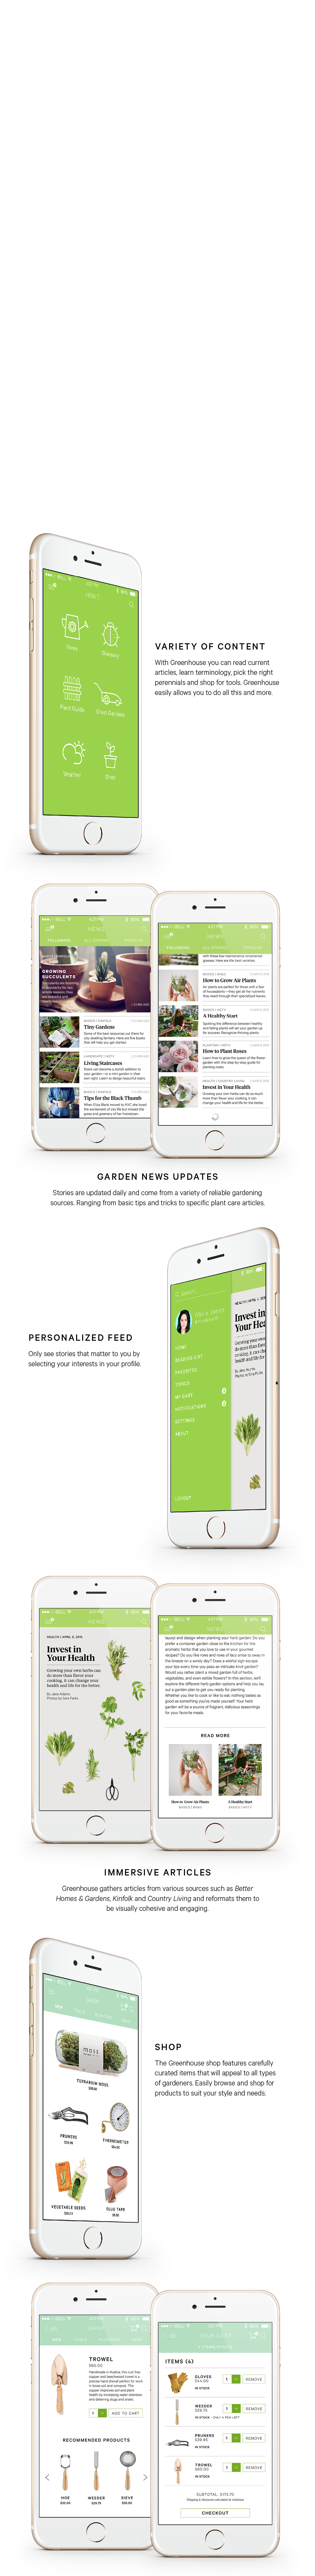 mobile app mobile design ios iphone app design application gardening ui design UI